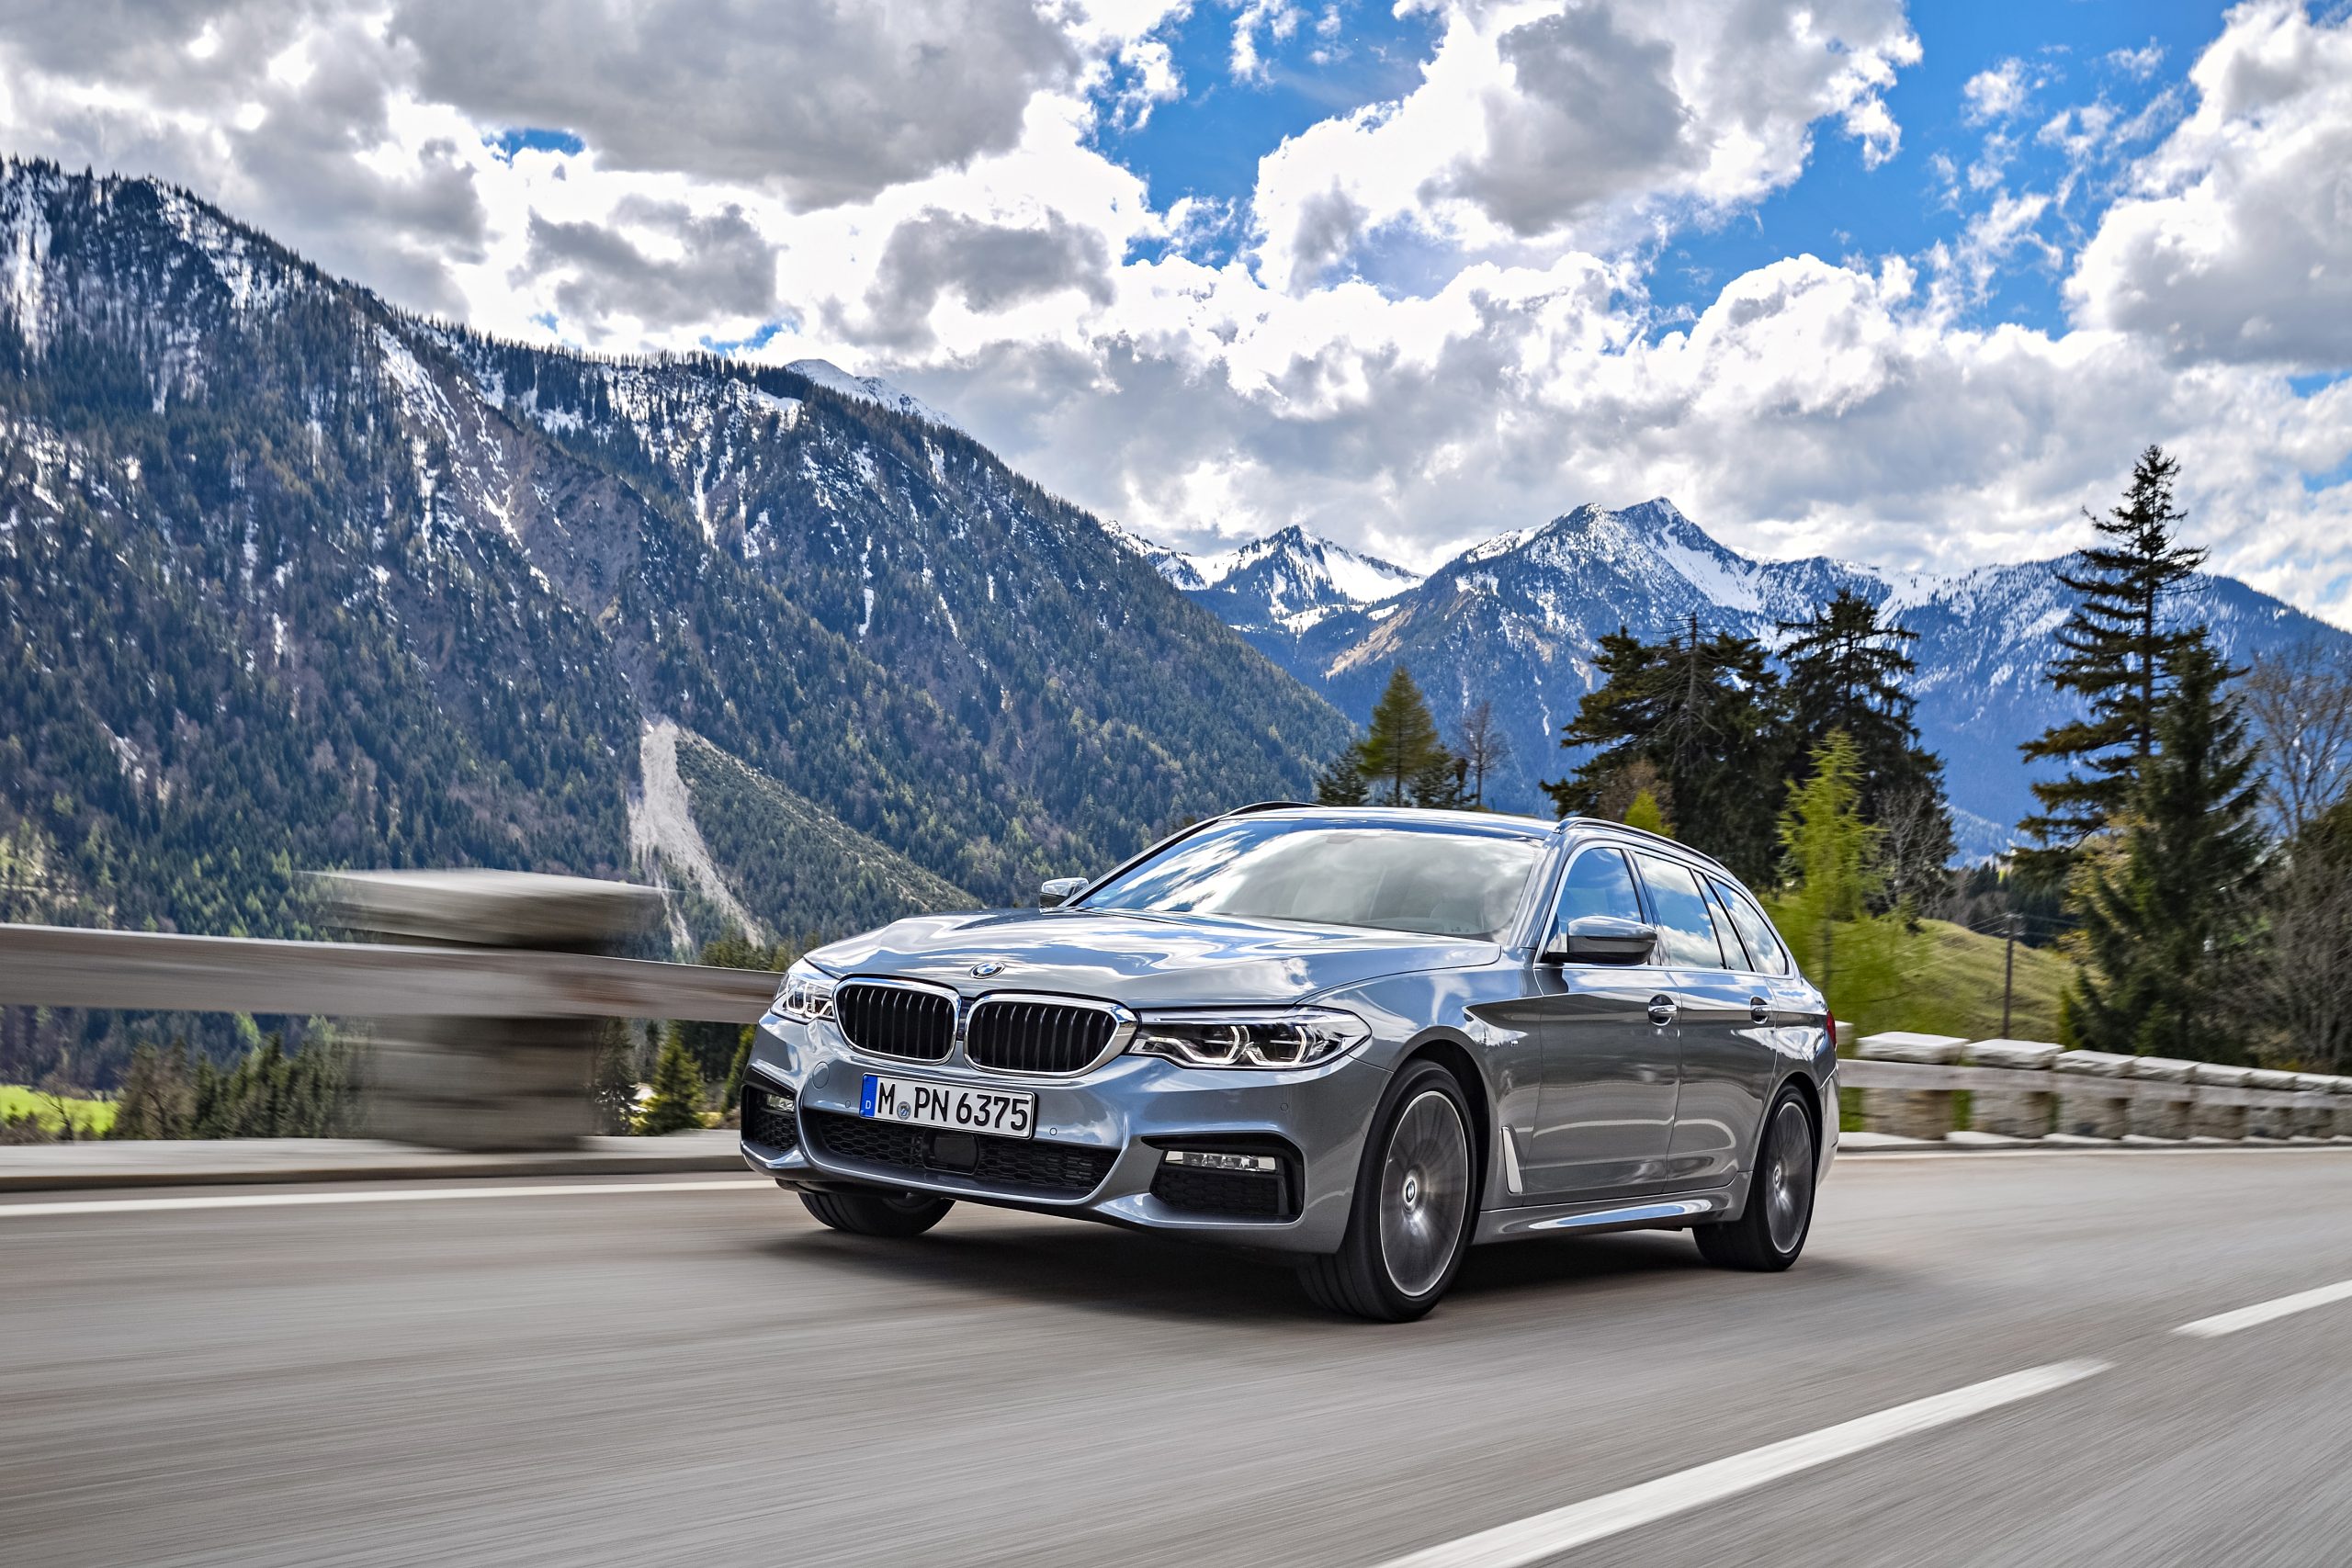 Νέες αναβαθμίσεις στα αυτοκίνητα της BMW από την άνοιξη του 2018